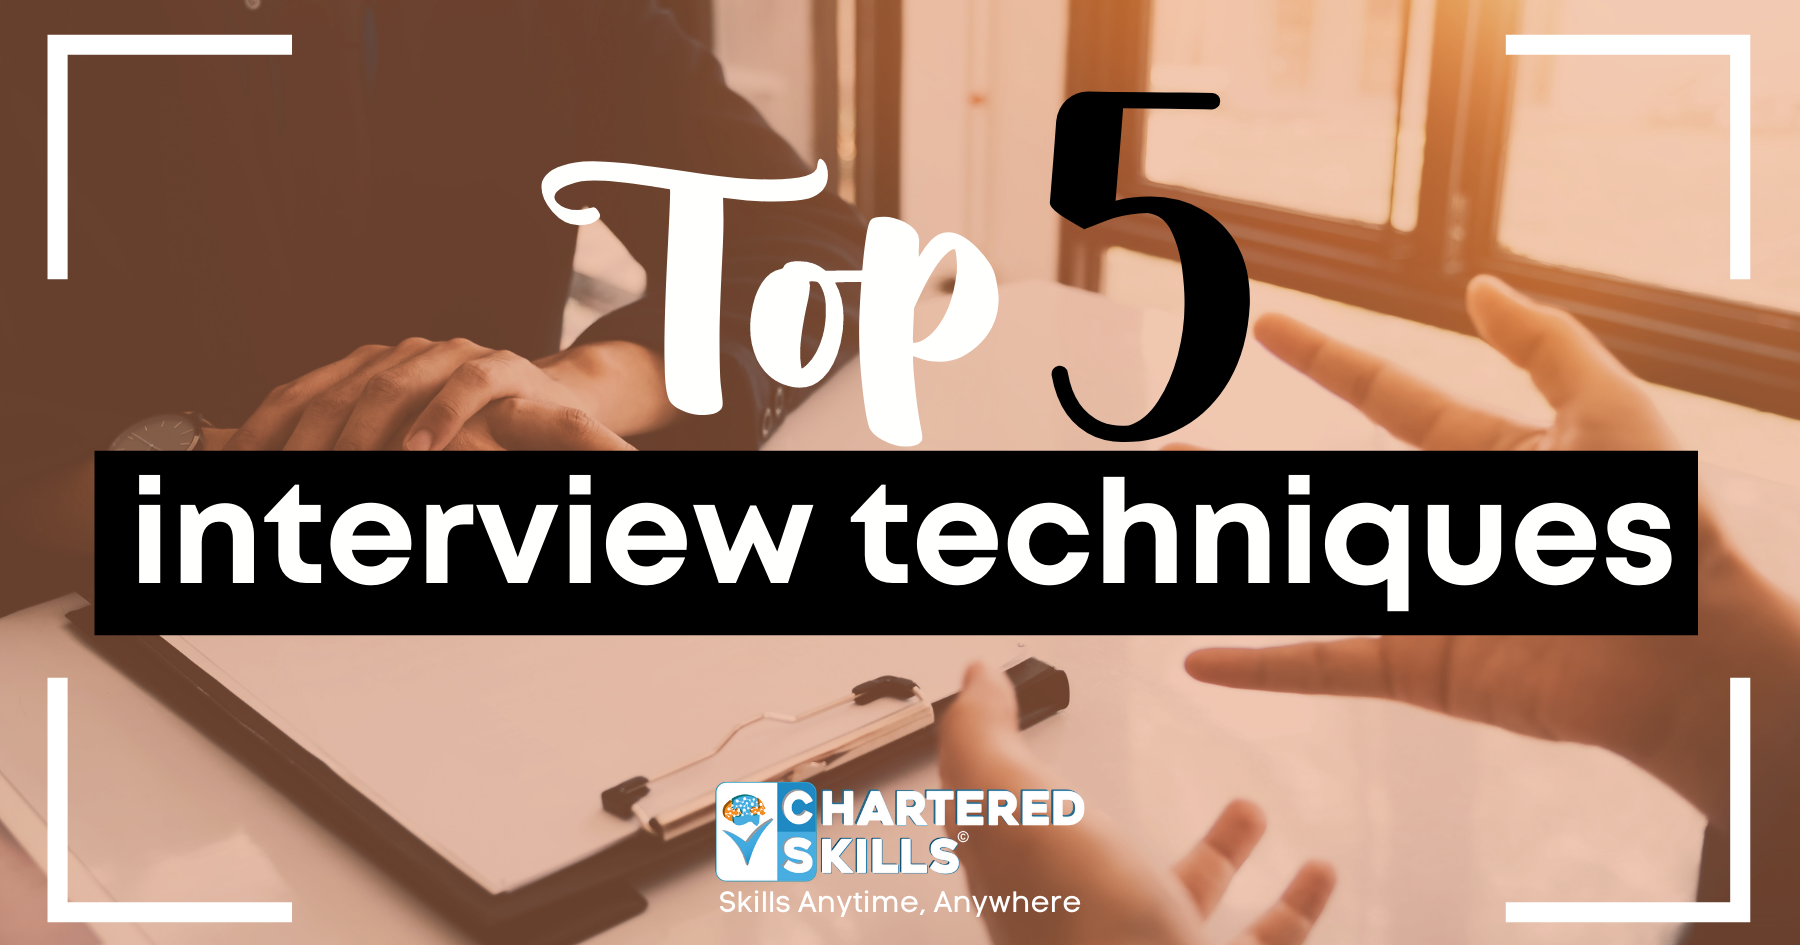 Top 5 interview techniques